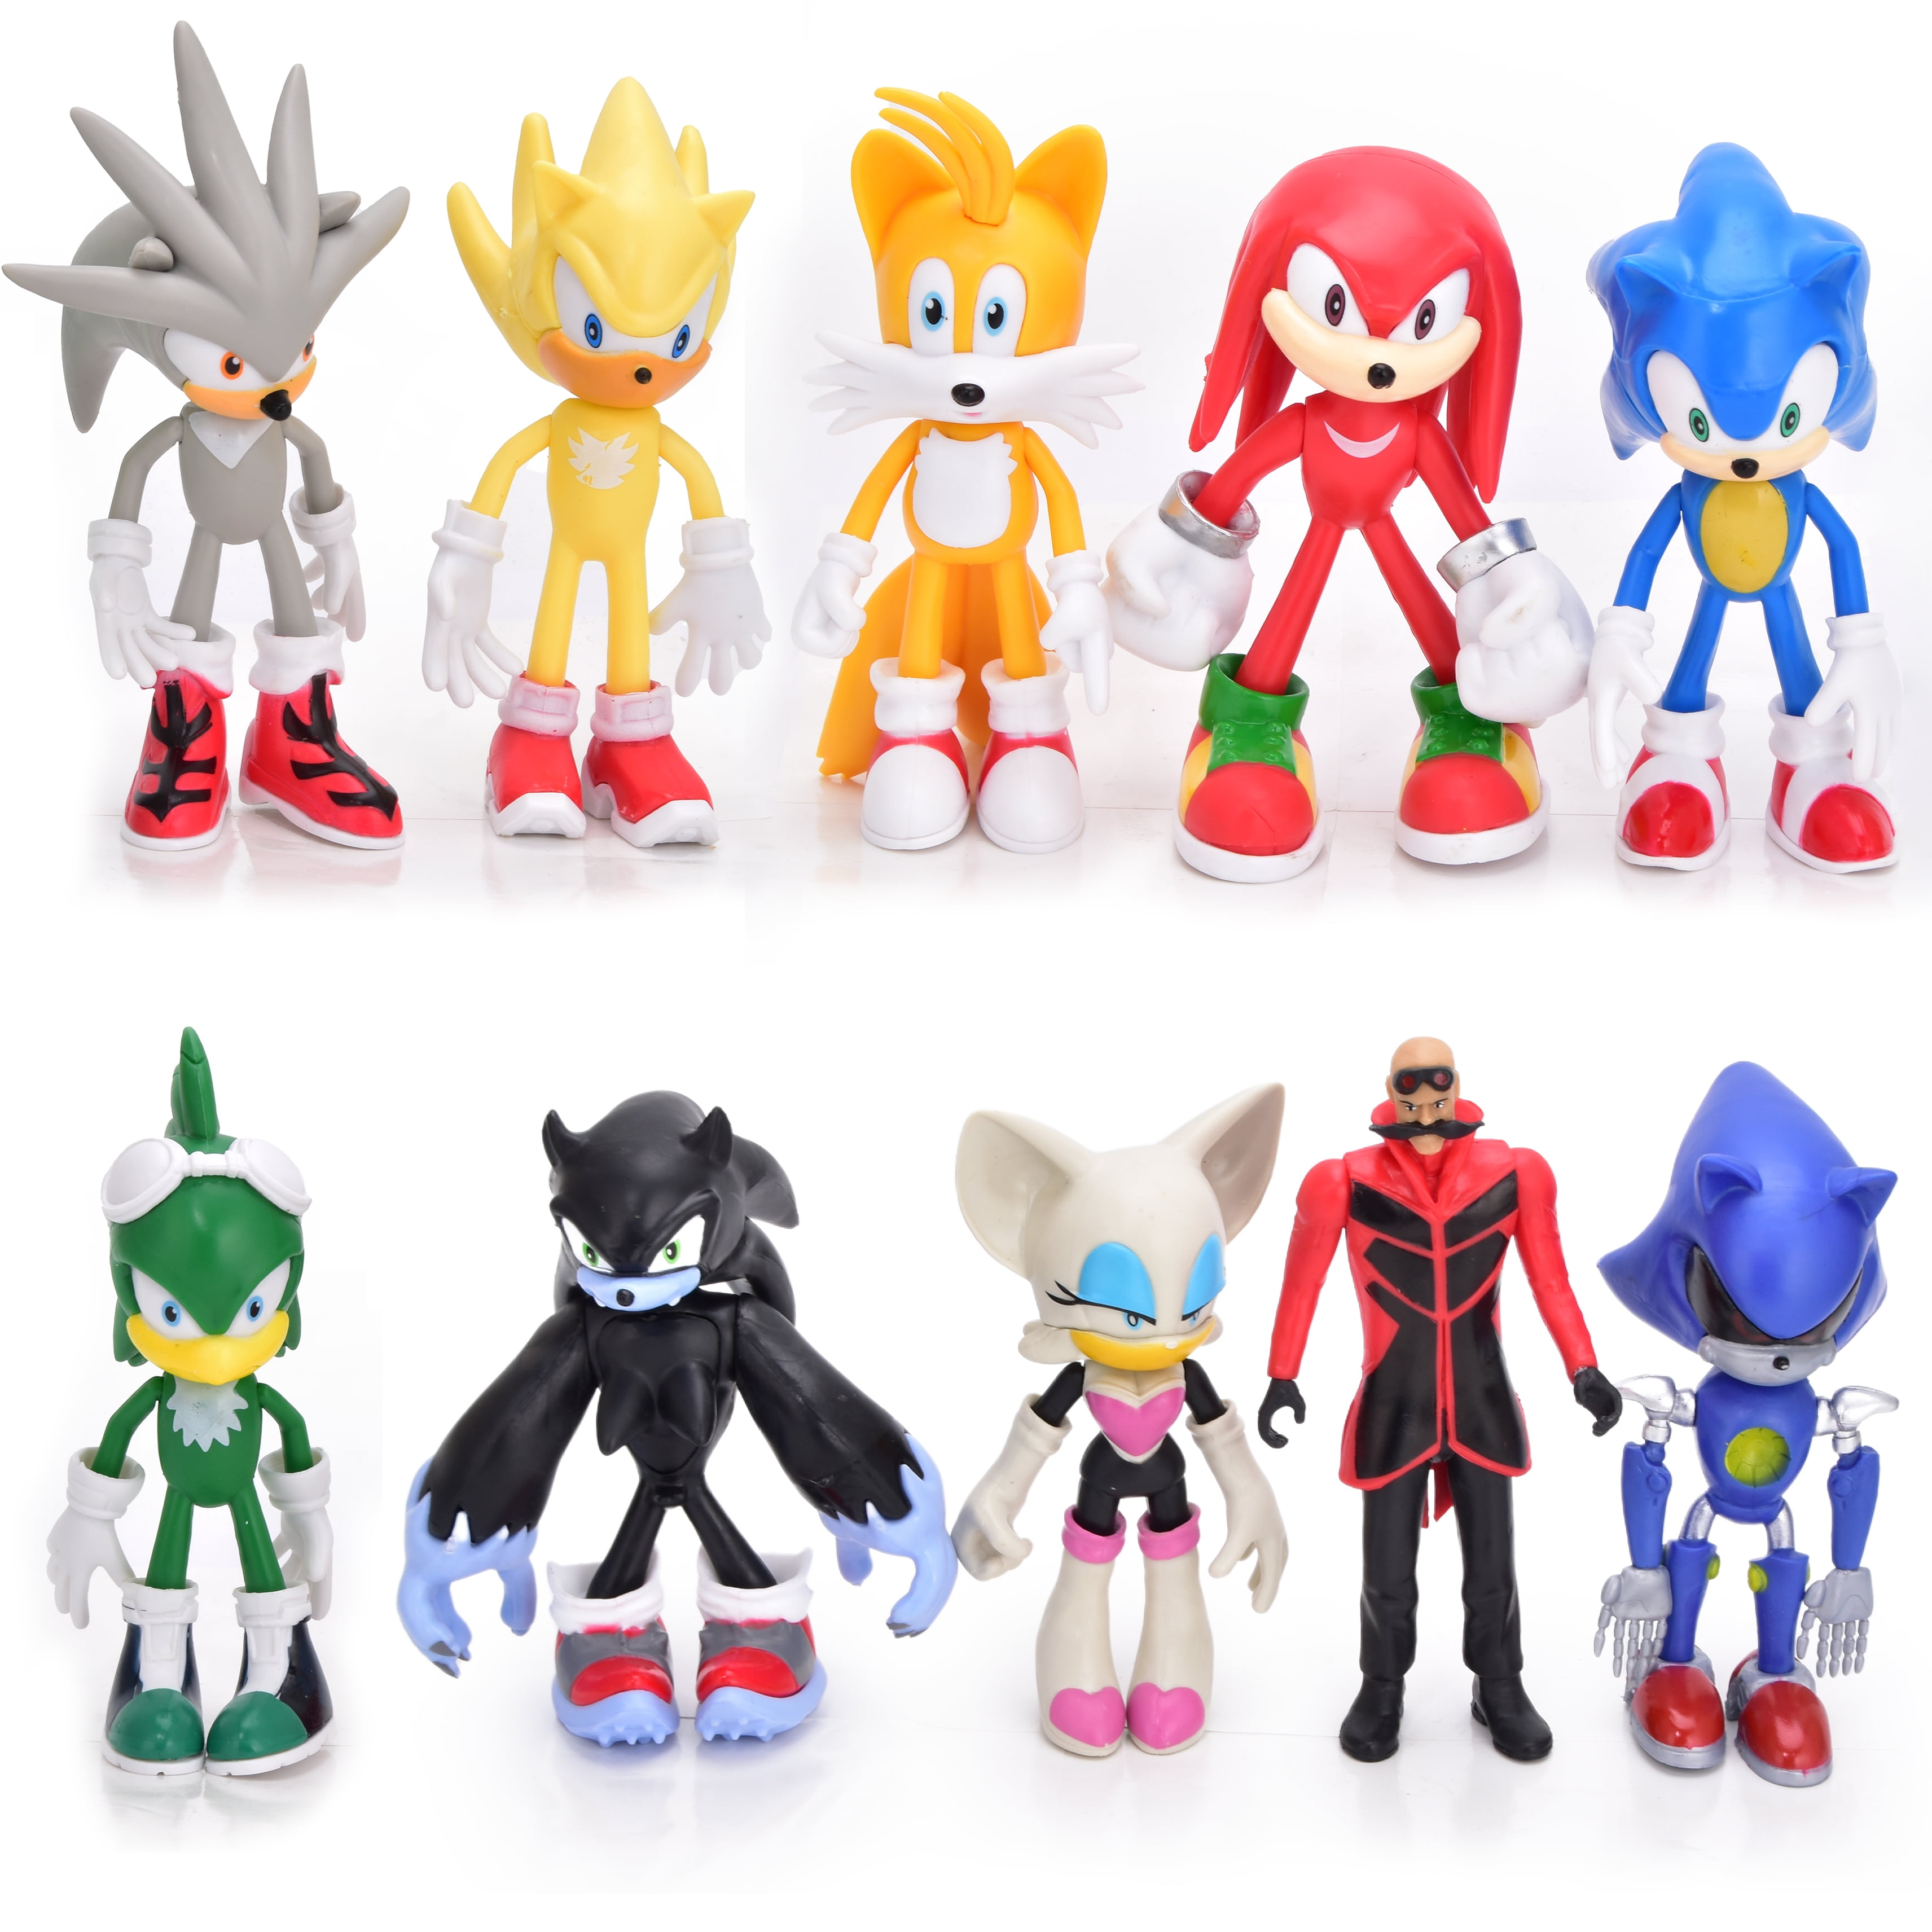 Mecha Sonic Inspired Custom Handmade Designer Toy